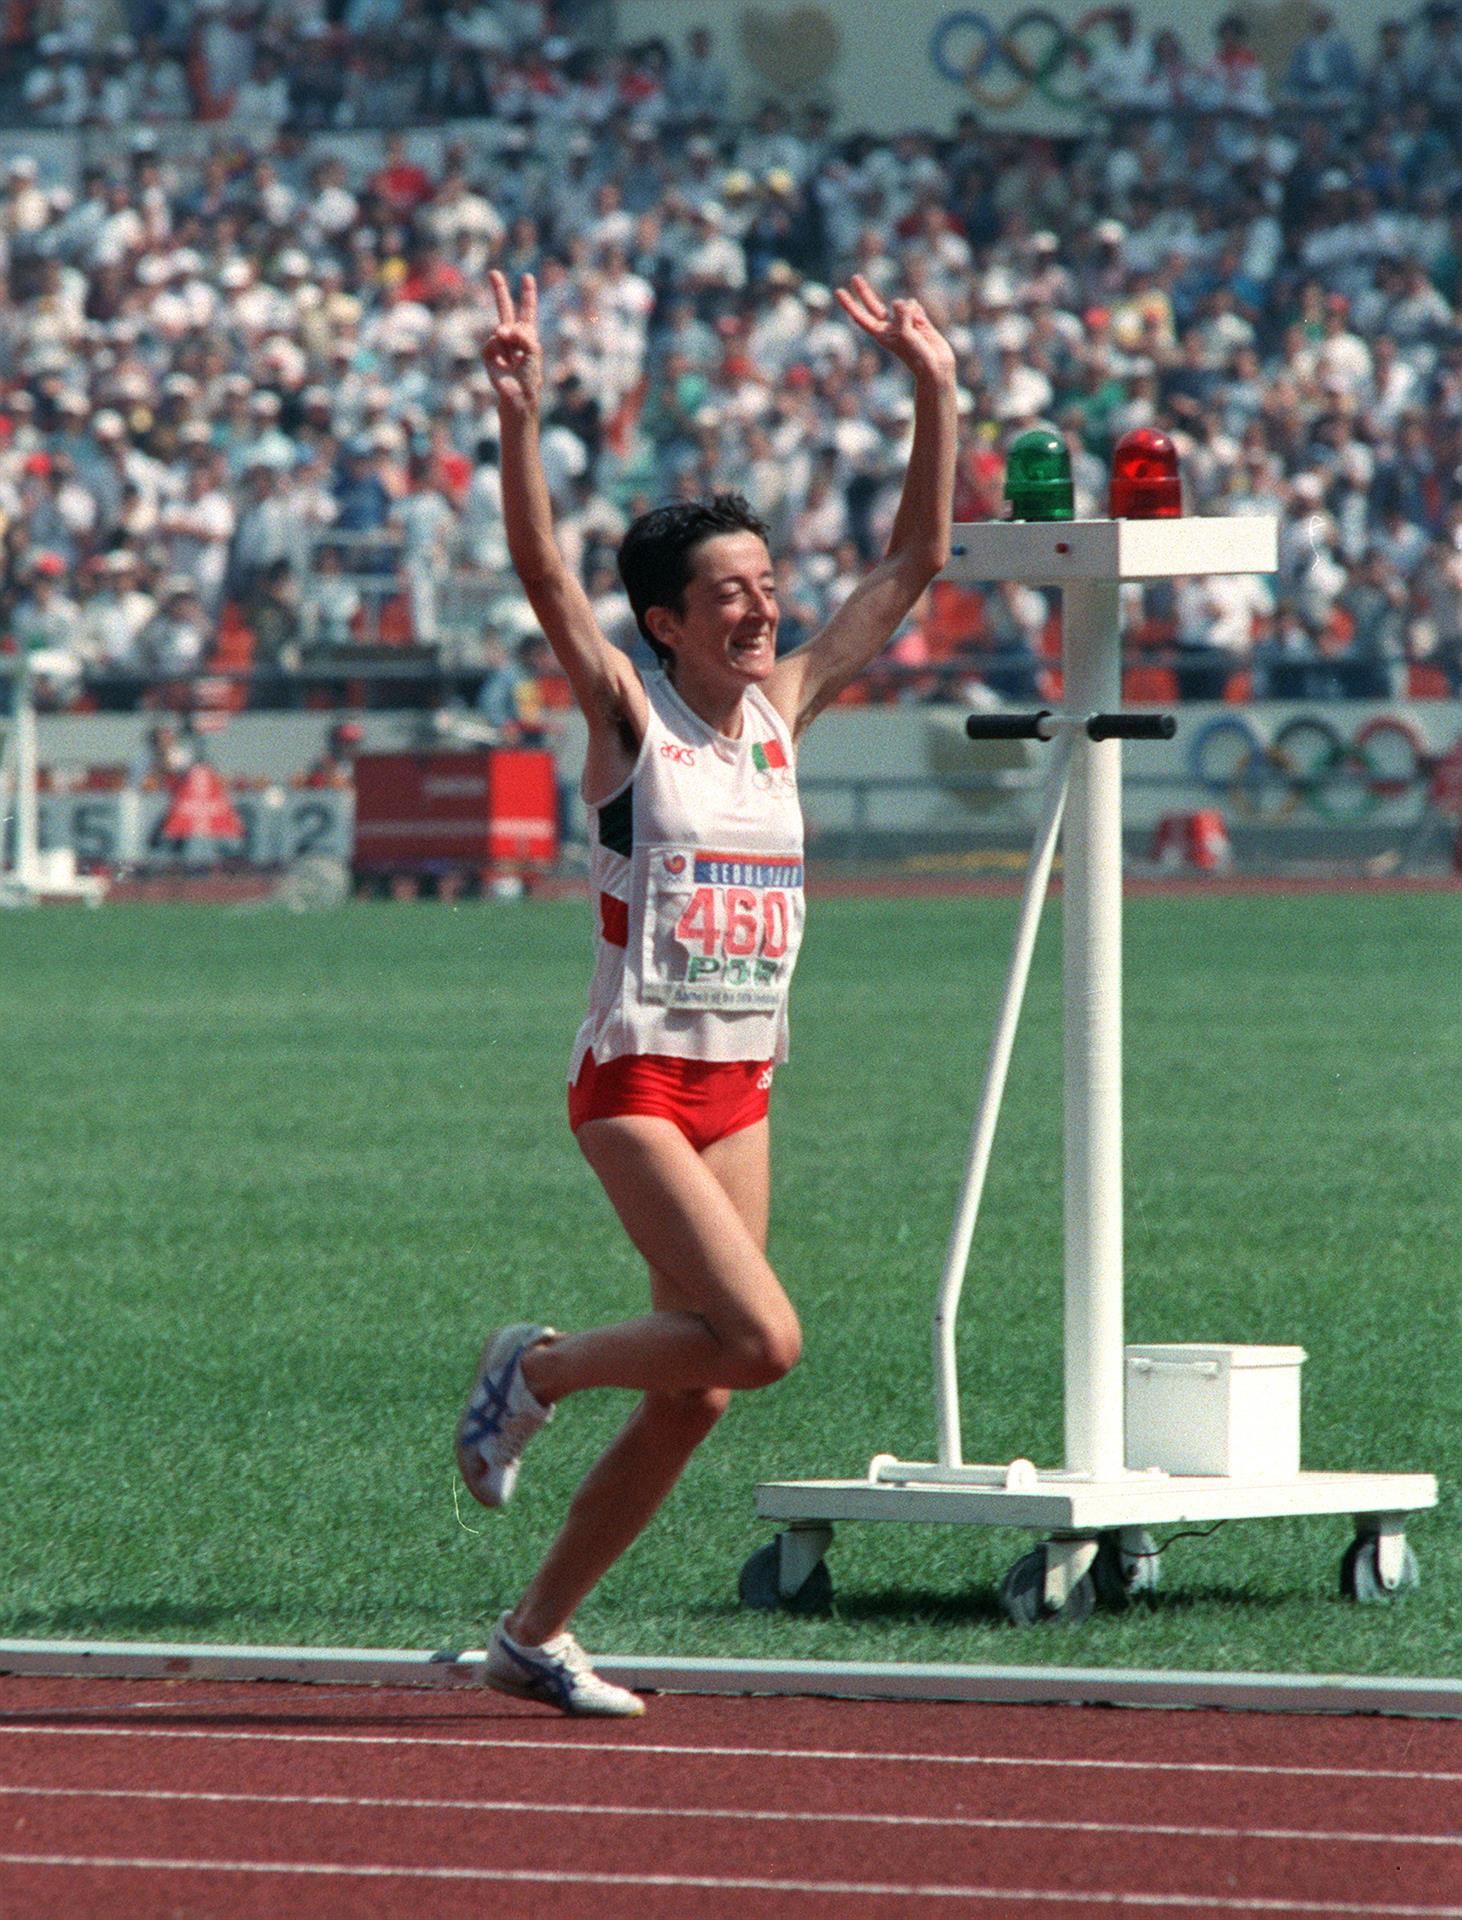 La corredora portuguesa Rosa Mota entra victoriosa en meta en la final de maratón femenino. Con su triunfo Portugal se adjudica la primera medalla de oro en la competición de atletismo de los Juegos Olímpicos de Seúl. EFE/jt